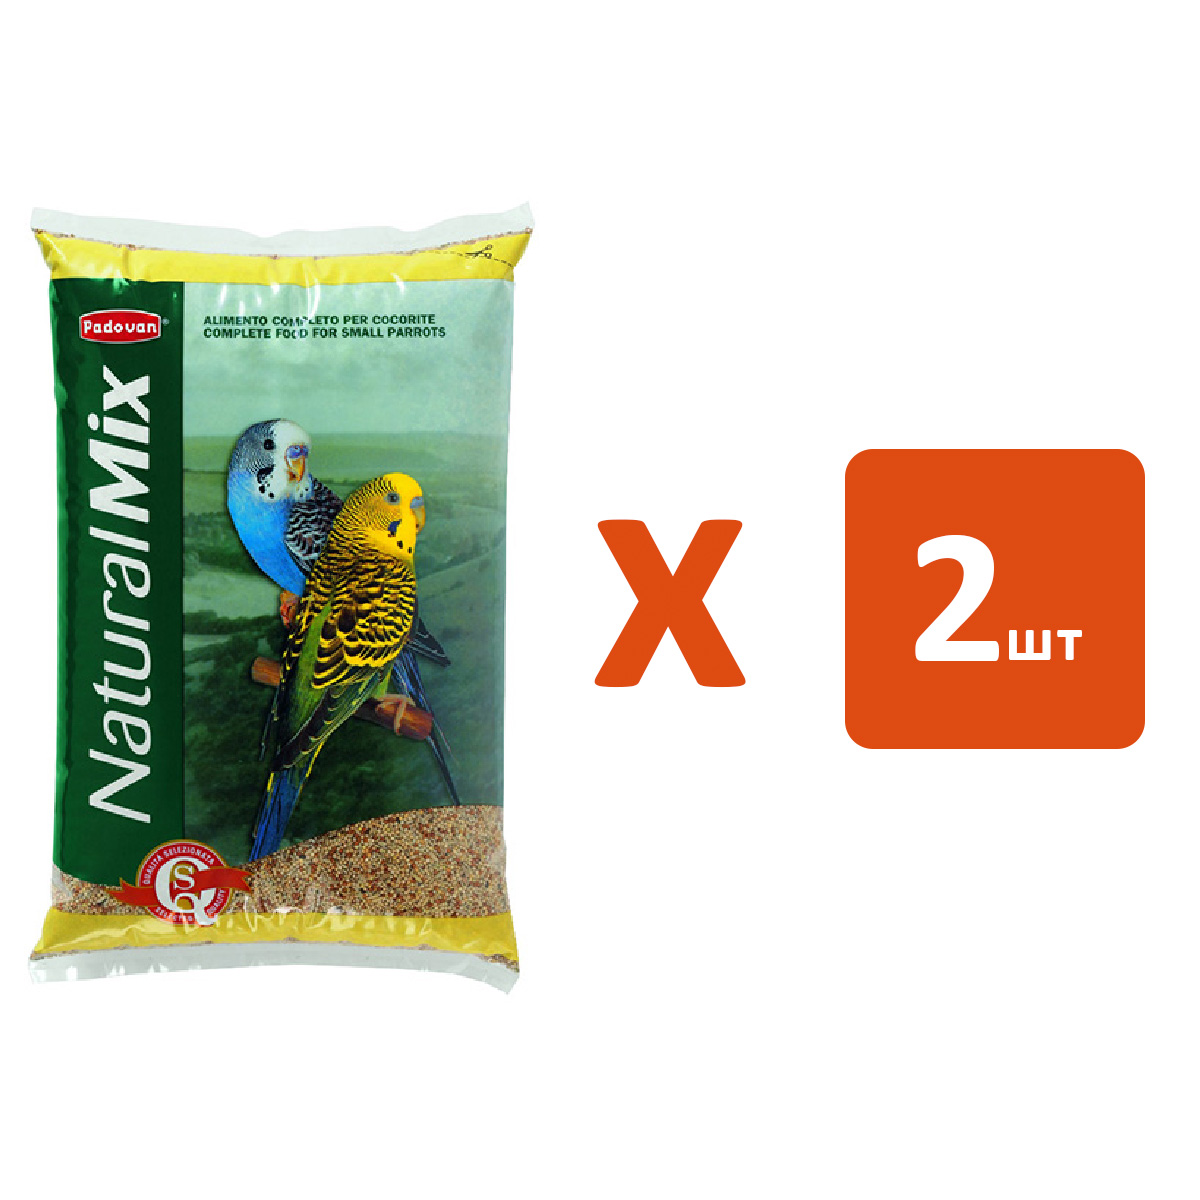 Сухой корм для волнистых попугаев PADOVAN NATURALMIX COCORITE, 2 шт по 5 кг